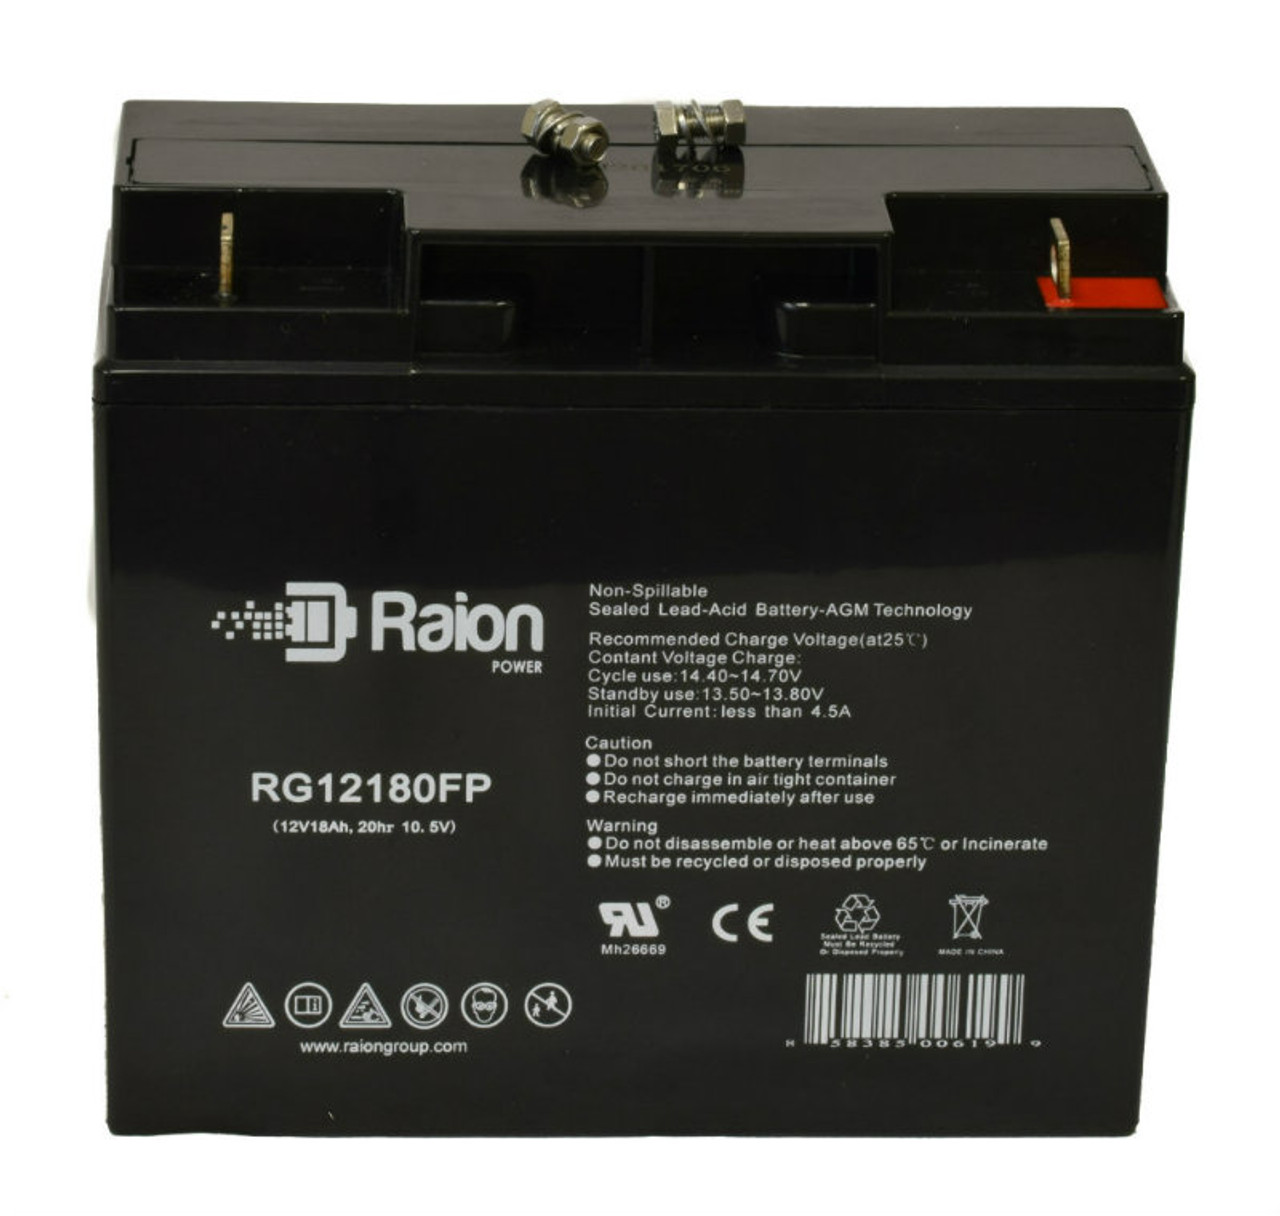 Raion Power RG12180FP 12V 18Ah Lead Acid Battery for Kinghero SJ12V18Ah